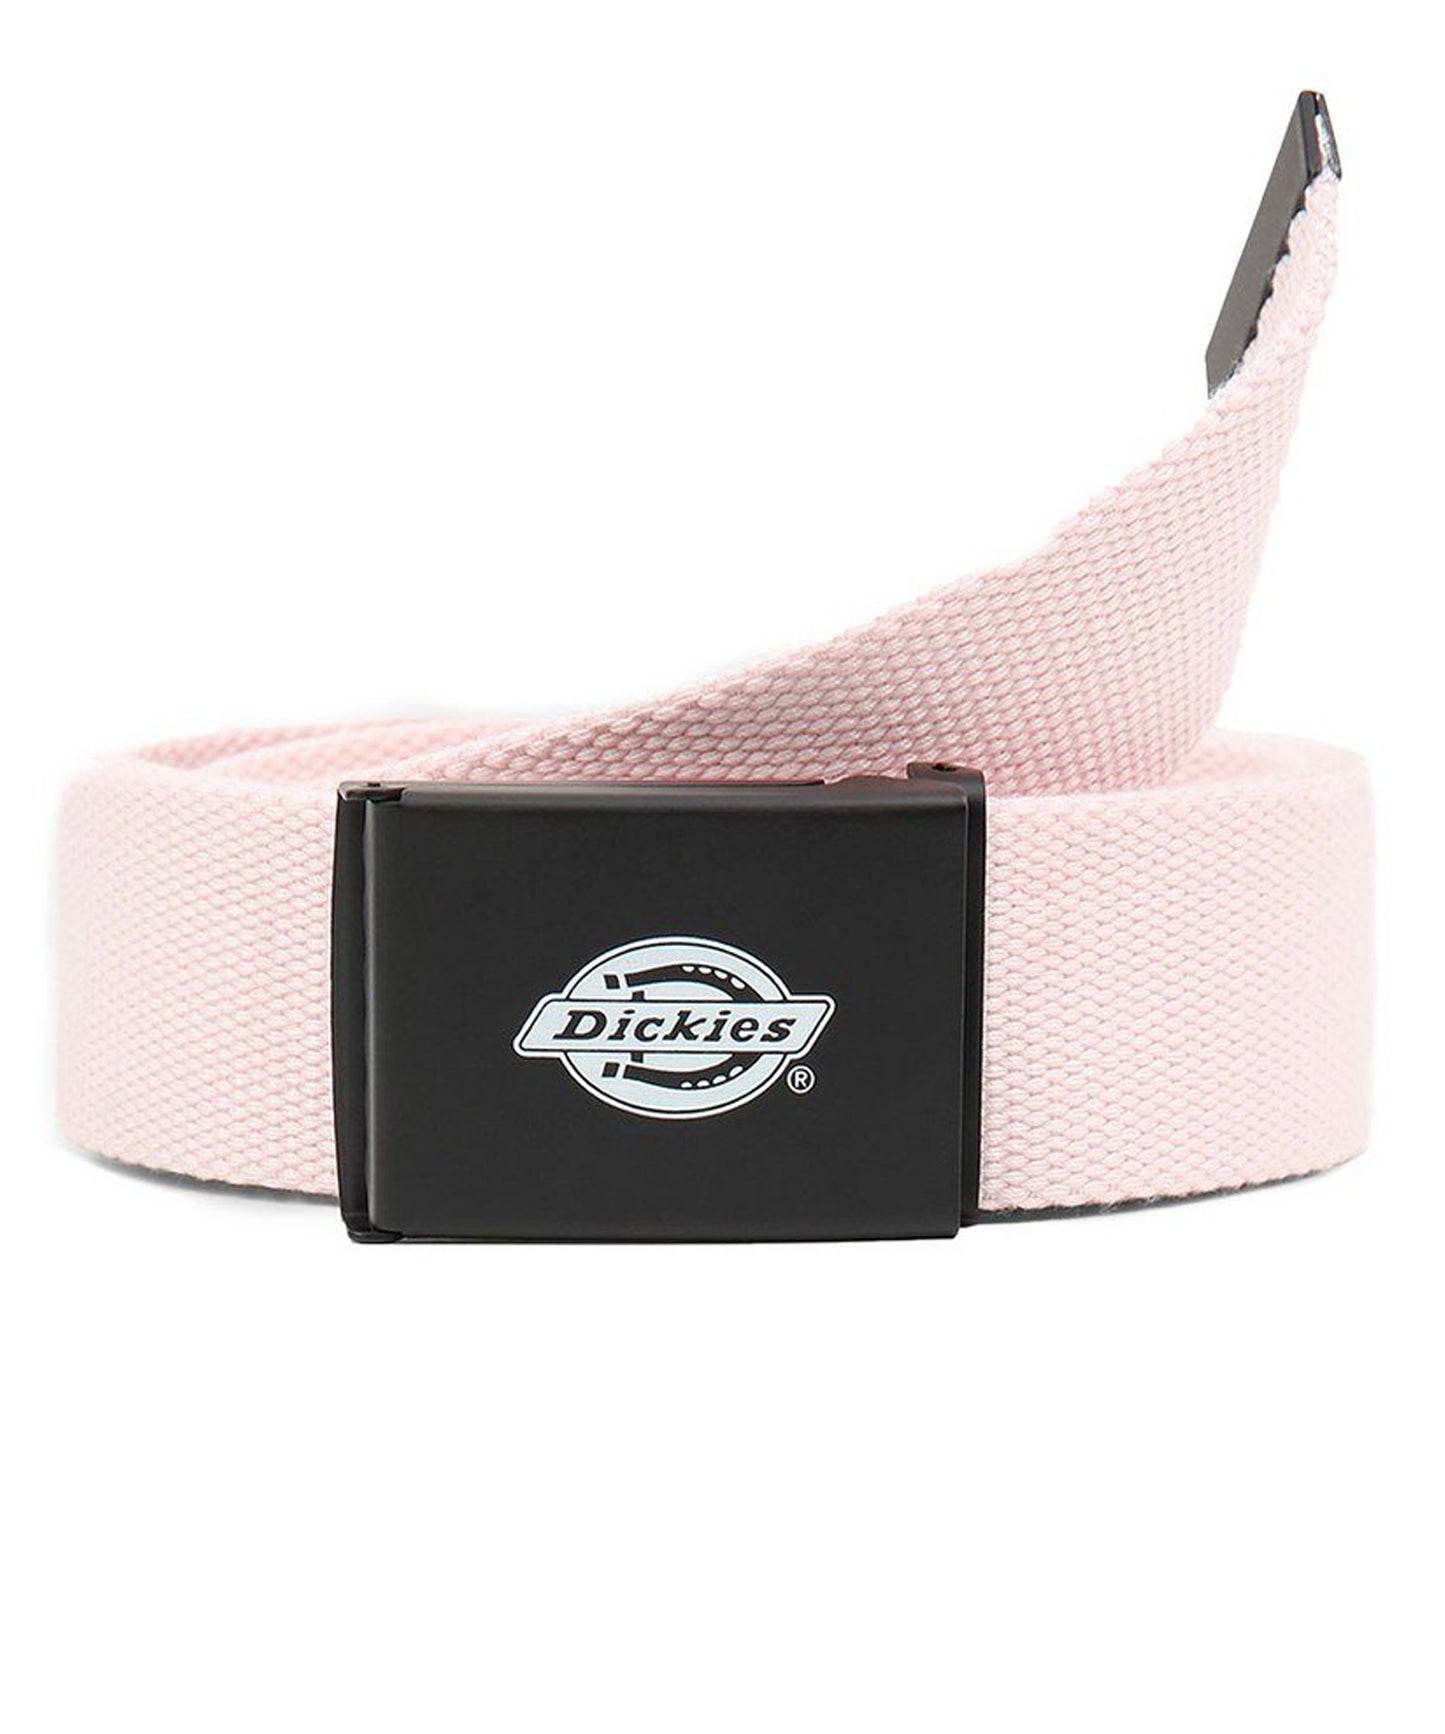 dickies cinturón loneta de color rosa y hebilla metalica con logo de dickies